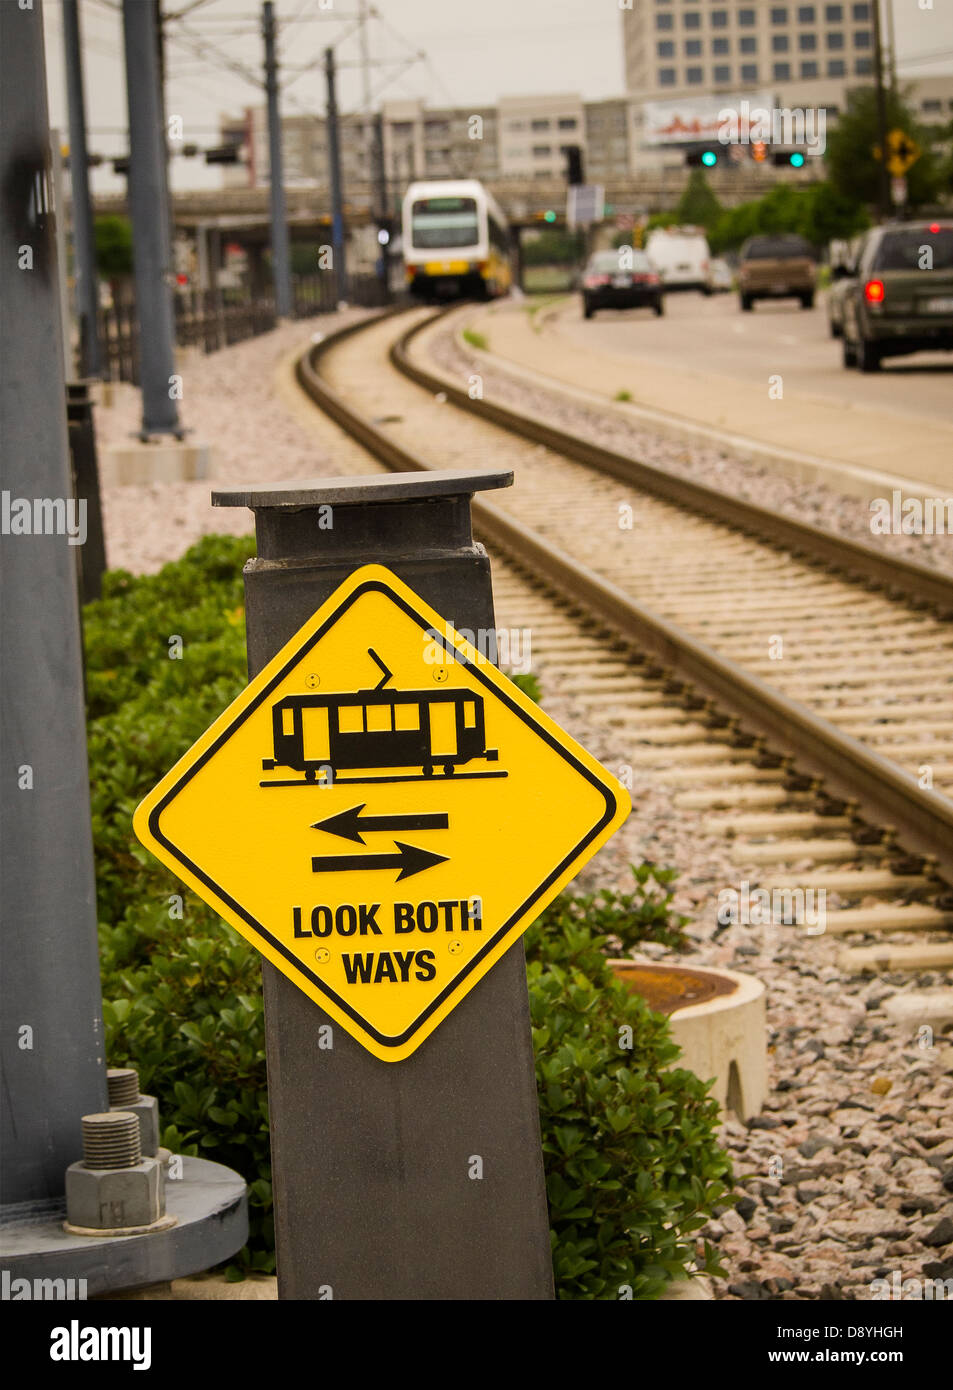 Öffentlicher Nahverkehr kommt nach Dallas, Dallas Area Rapid Transit, elektrische Straßenbahnen. Sicherheitszeichen warnt Passanten nach Zügen suchen Stockfoto